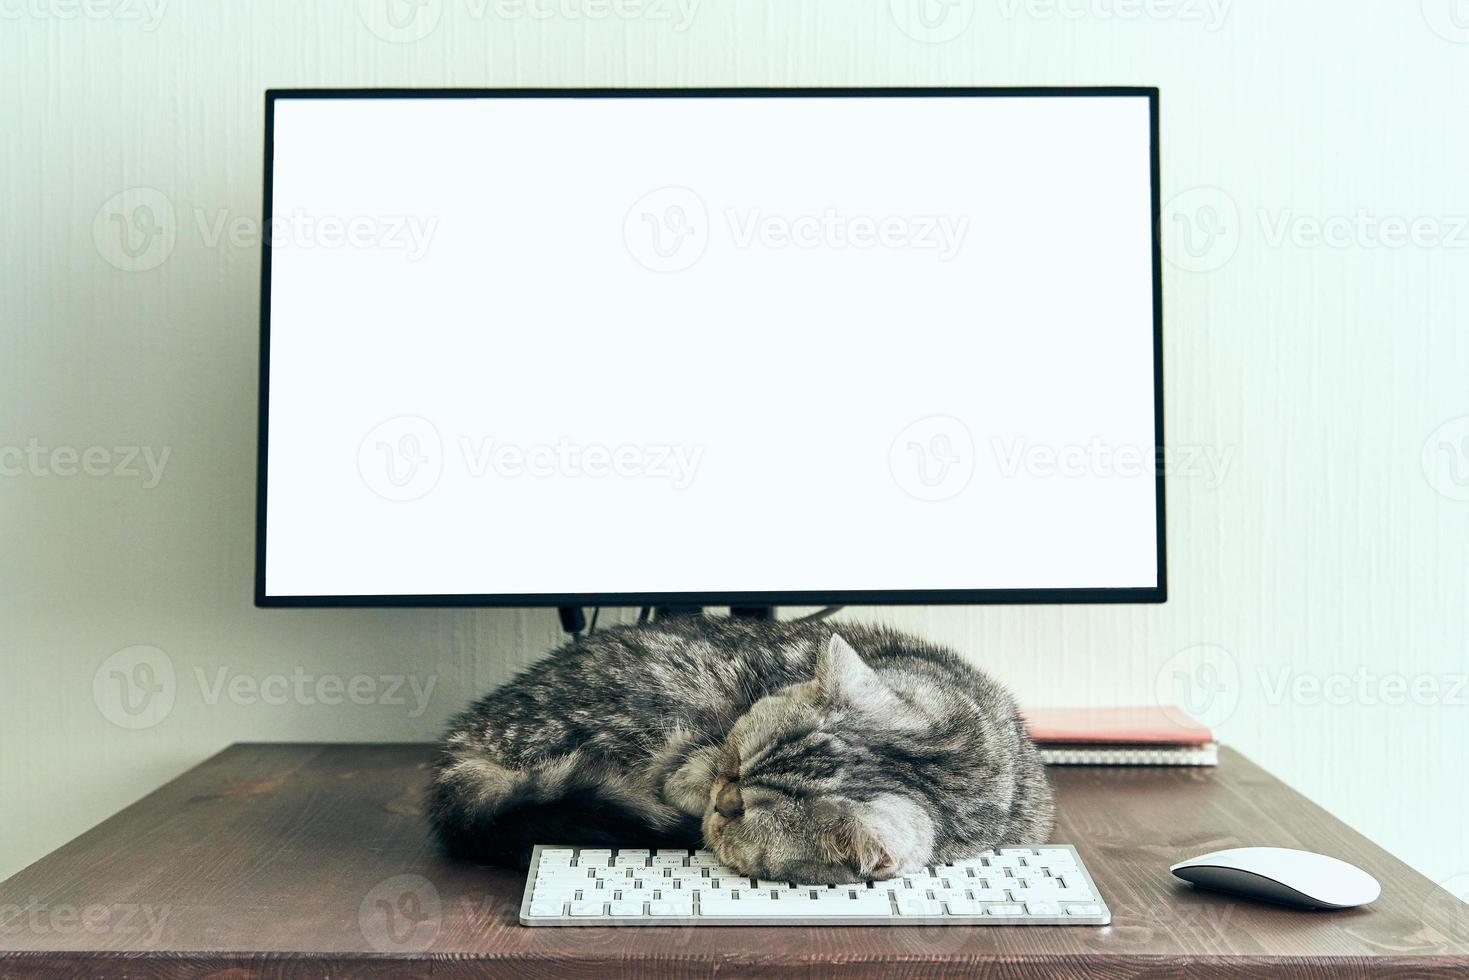 håll dig lugn och stanna hemma koncept. fluffig katt sover på skrivbordet bredvid datorn. foto